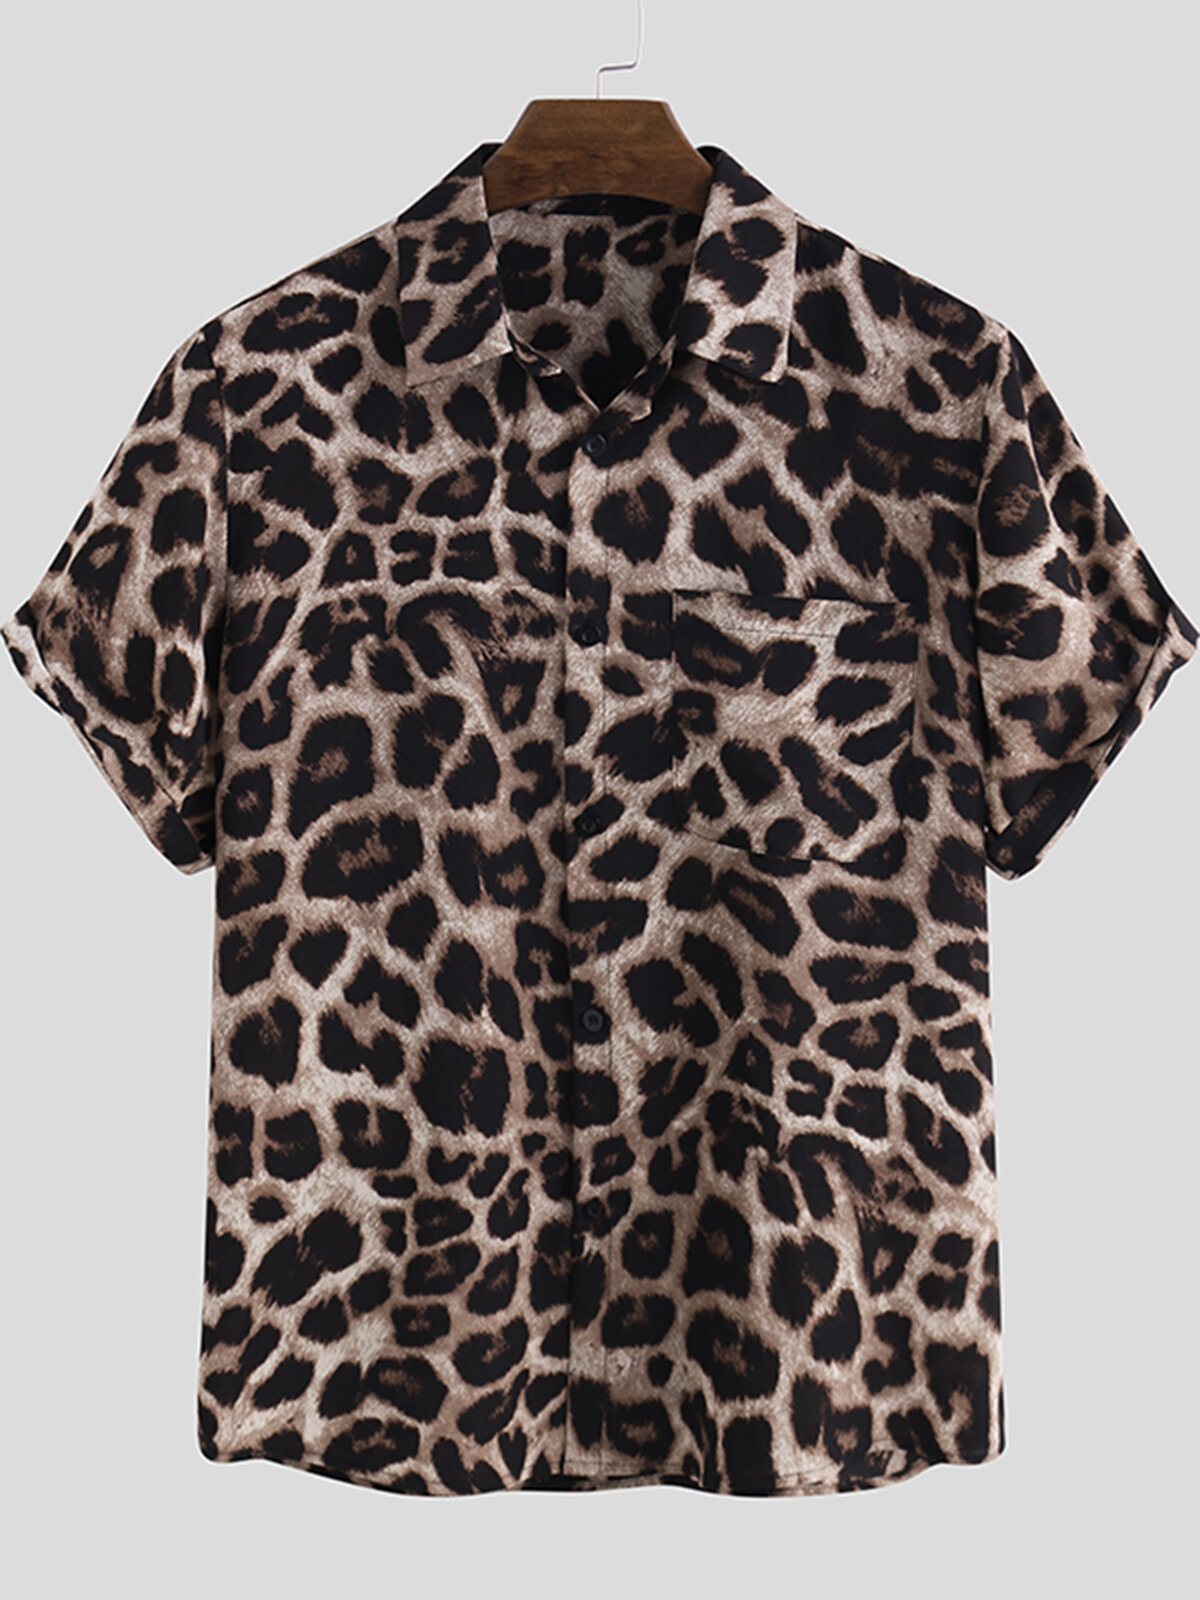 Camisas masculinas casuais de manga curta com estampa de leopardo